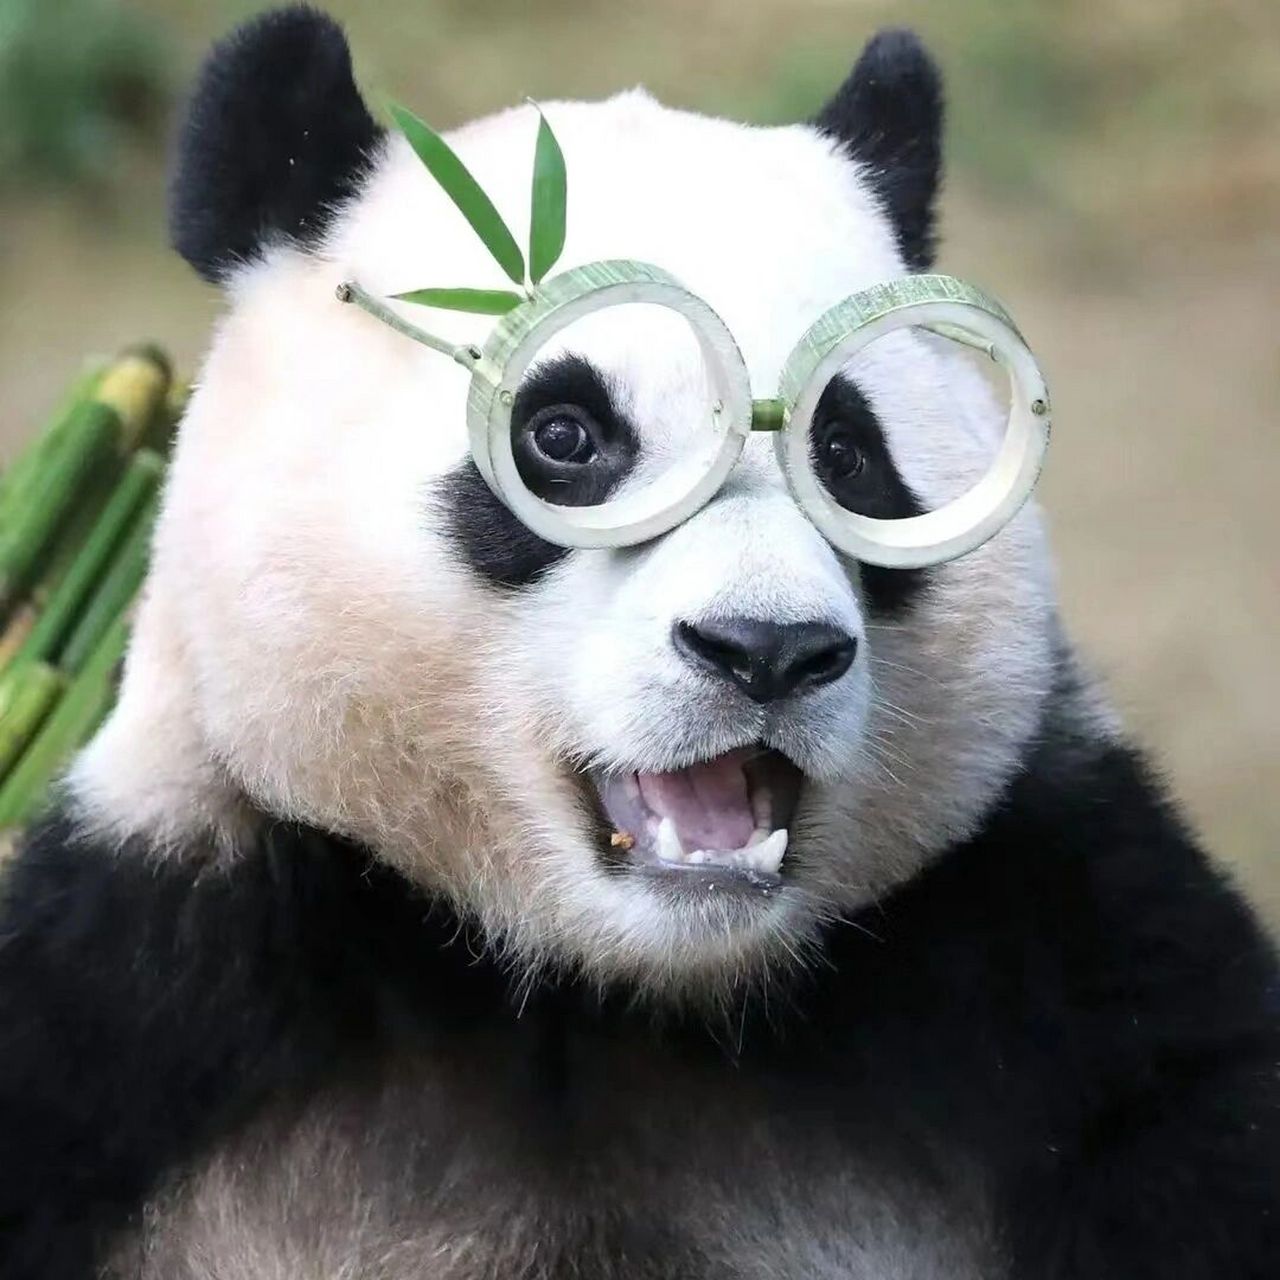 福宝就是世界上最幸福的熊猫  眼睛亮亮爱吃jiojio得福猪猪99 太